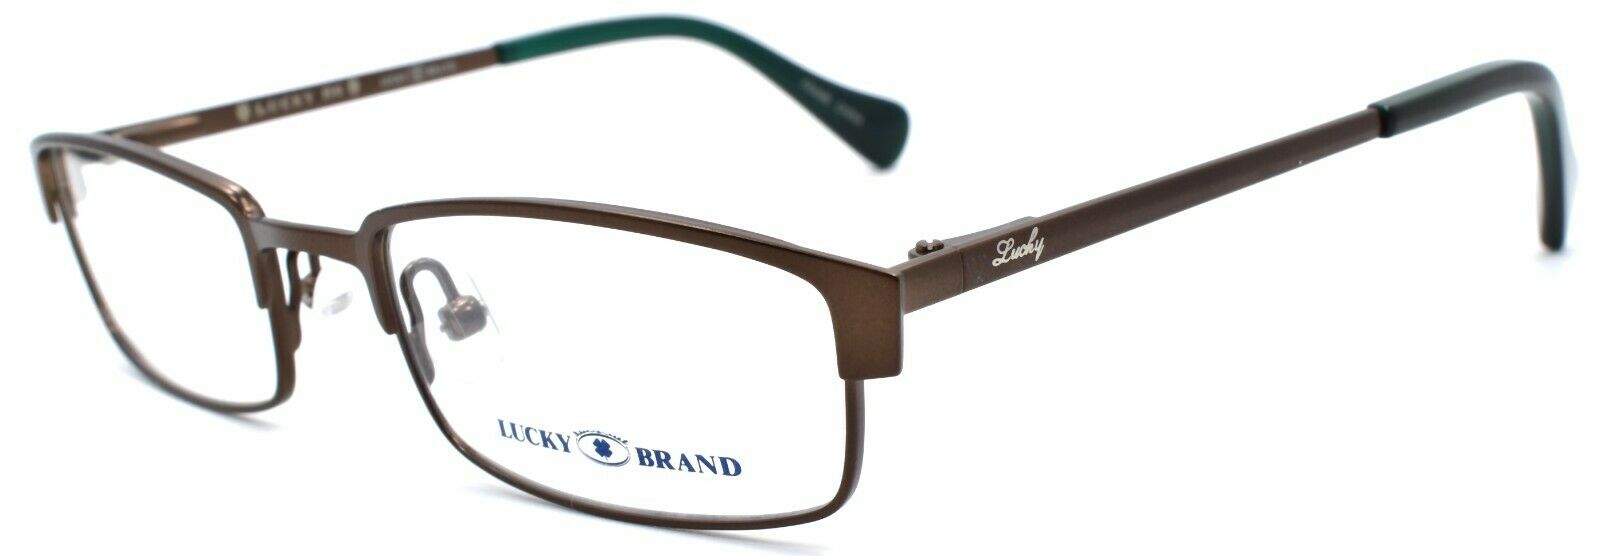 1-LUCKY BRAND Break Time Kids Unisex Eyeglasses Frames 45-17-125 Brown-751286214697-IKSpecs